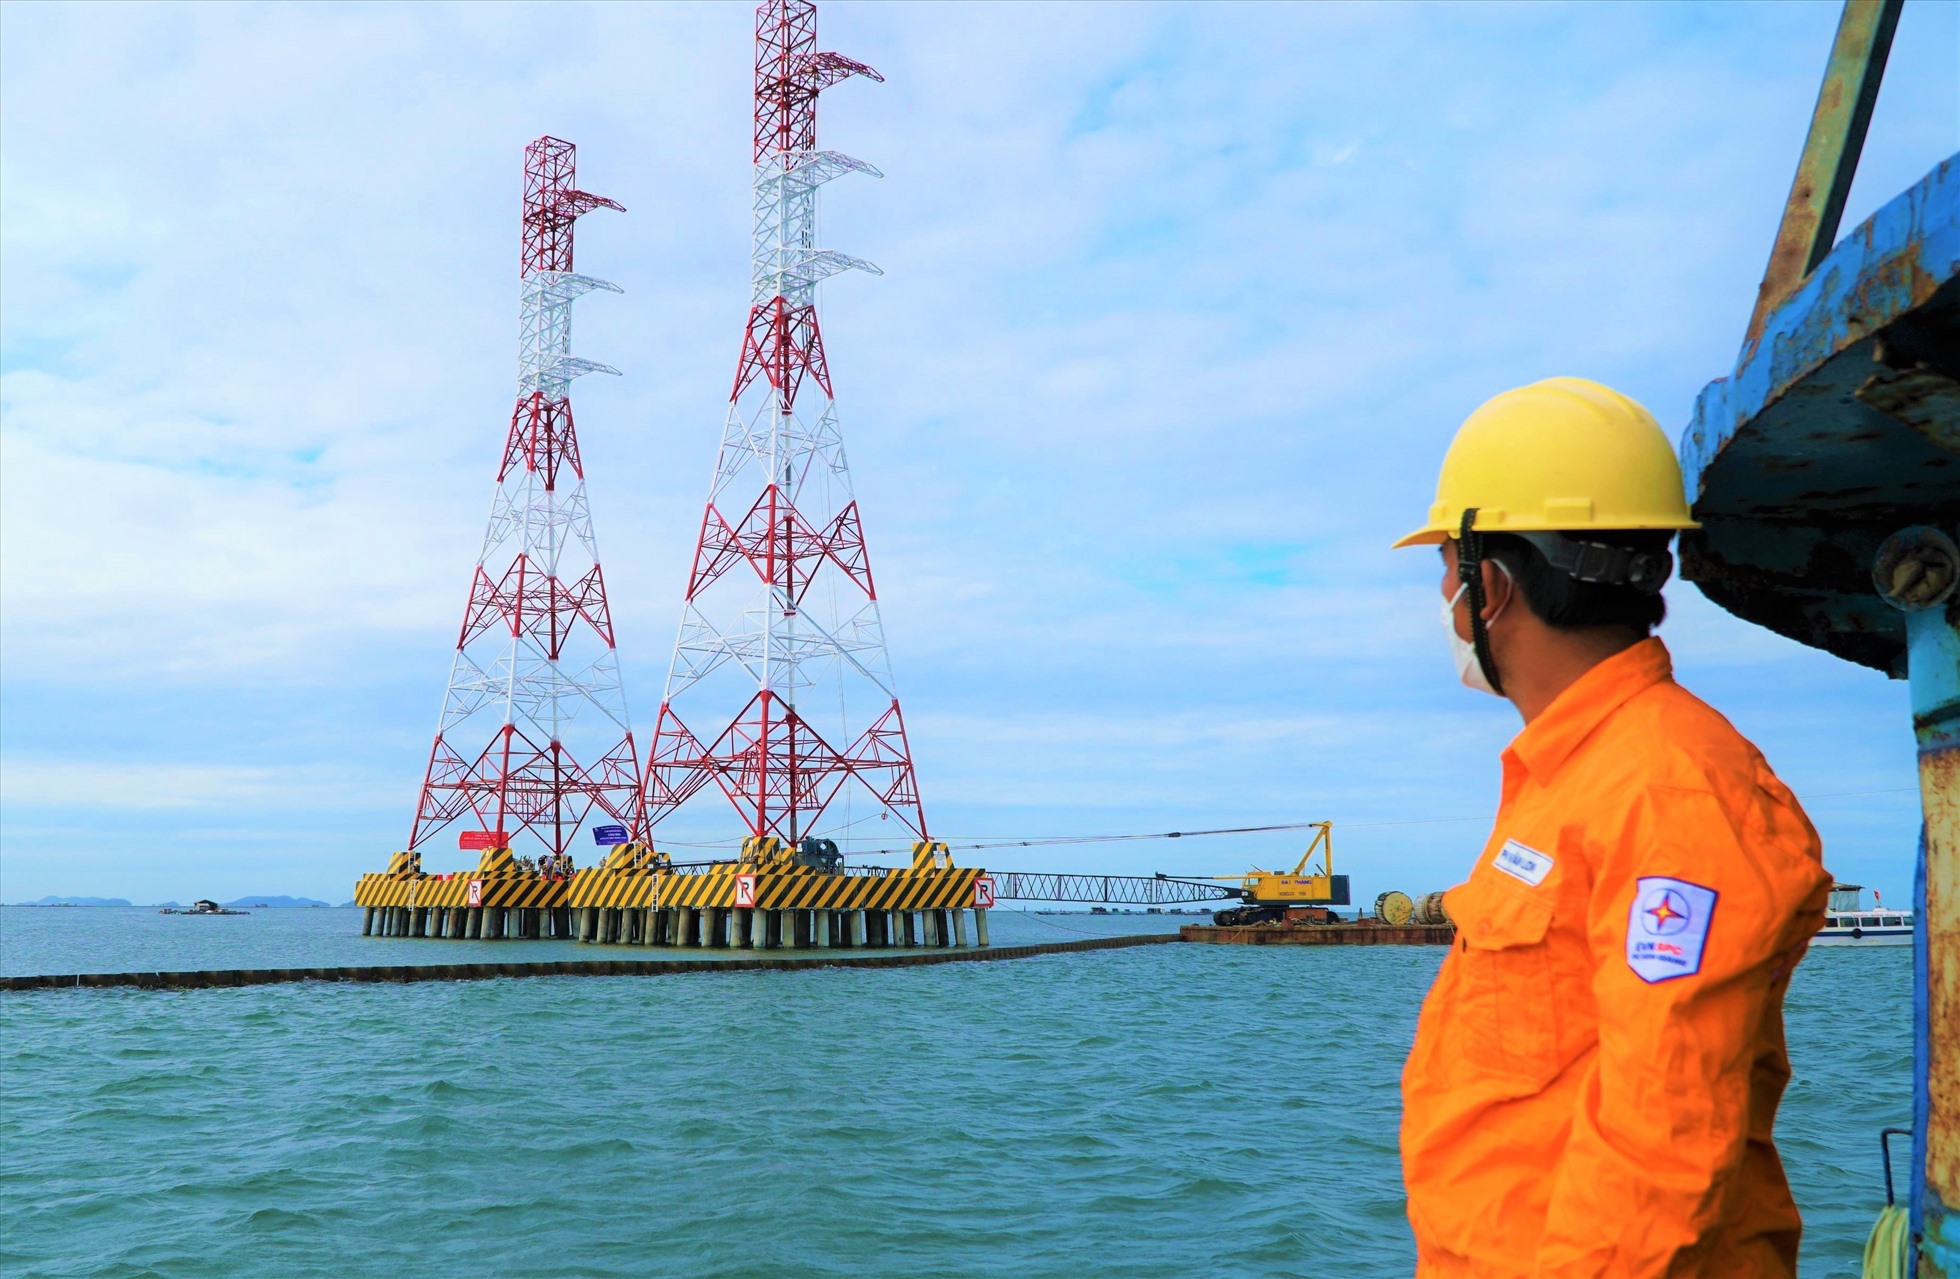 Đường dây 220kV vượt biển Kiên Bình – Phú Quốc sắp được hoàn thành và đưa vào sử dụng. Ảnh: EVNSPC cung cấp.